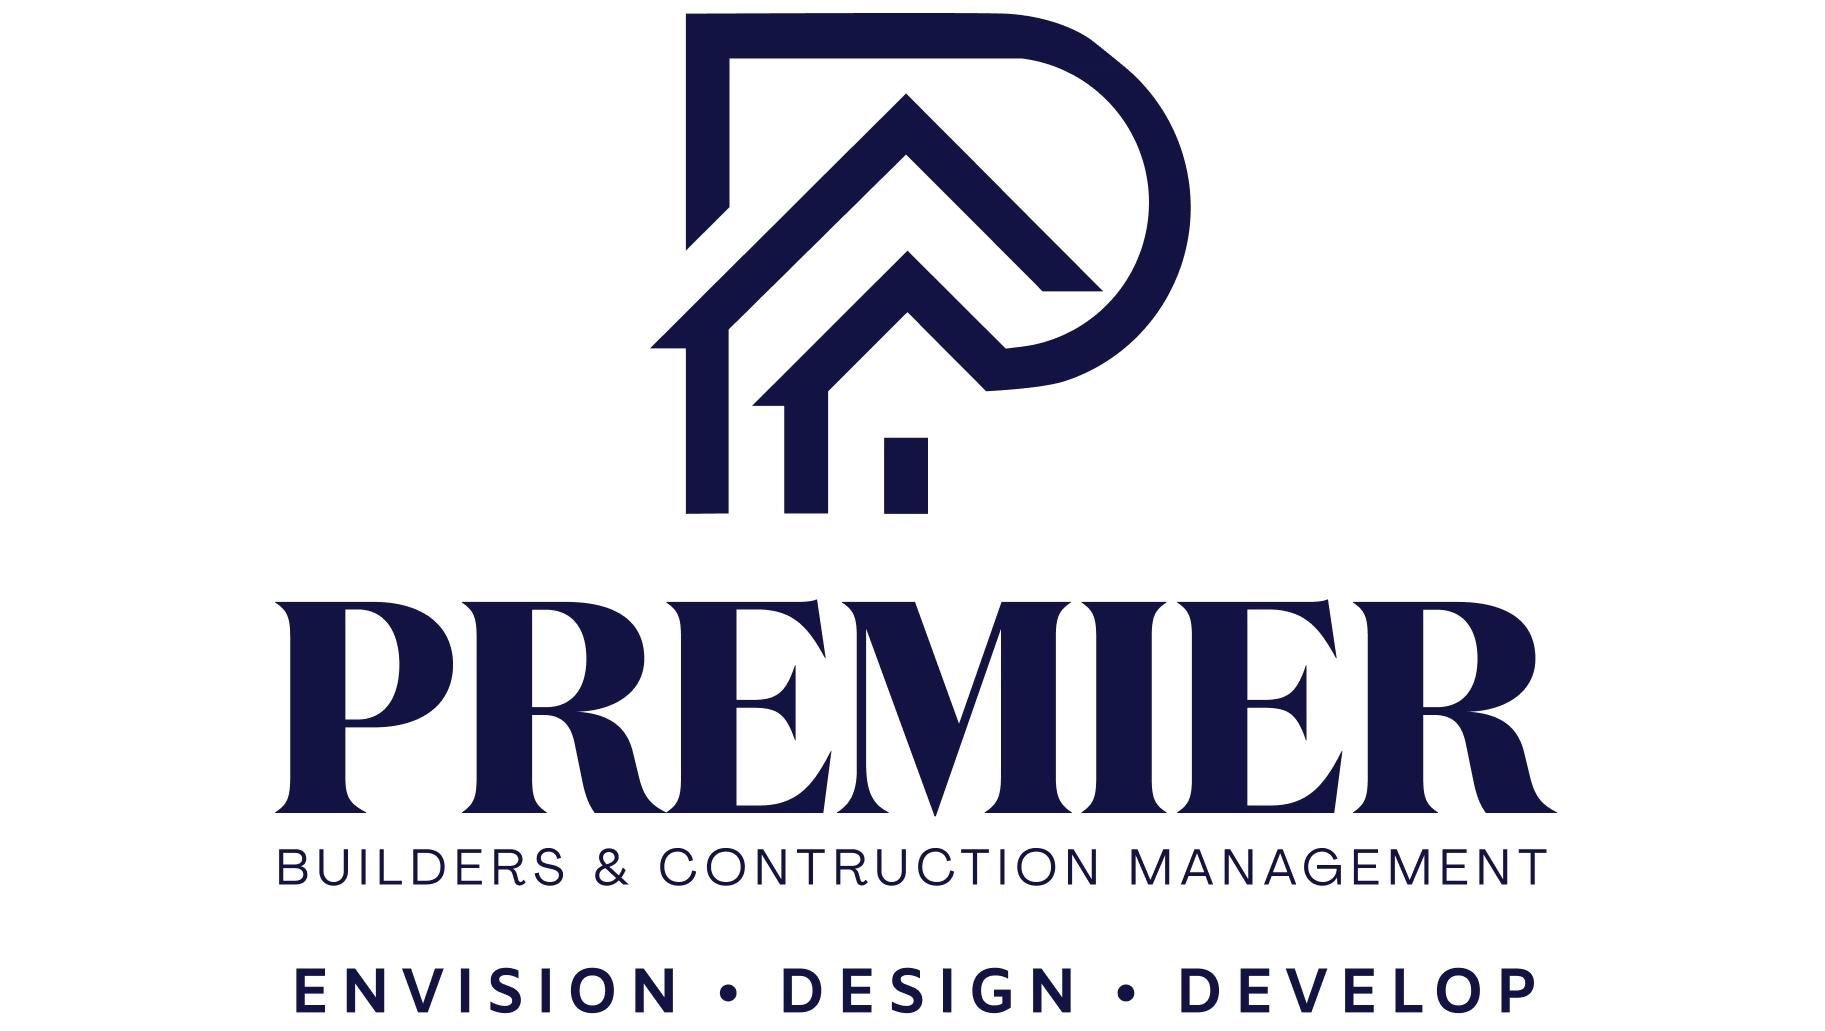 Premier Builders & Construction Logo